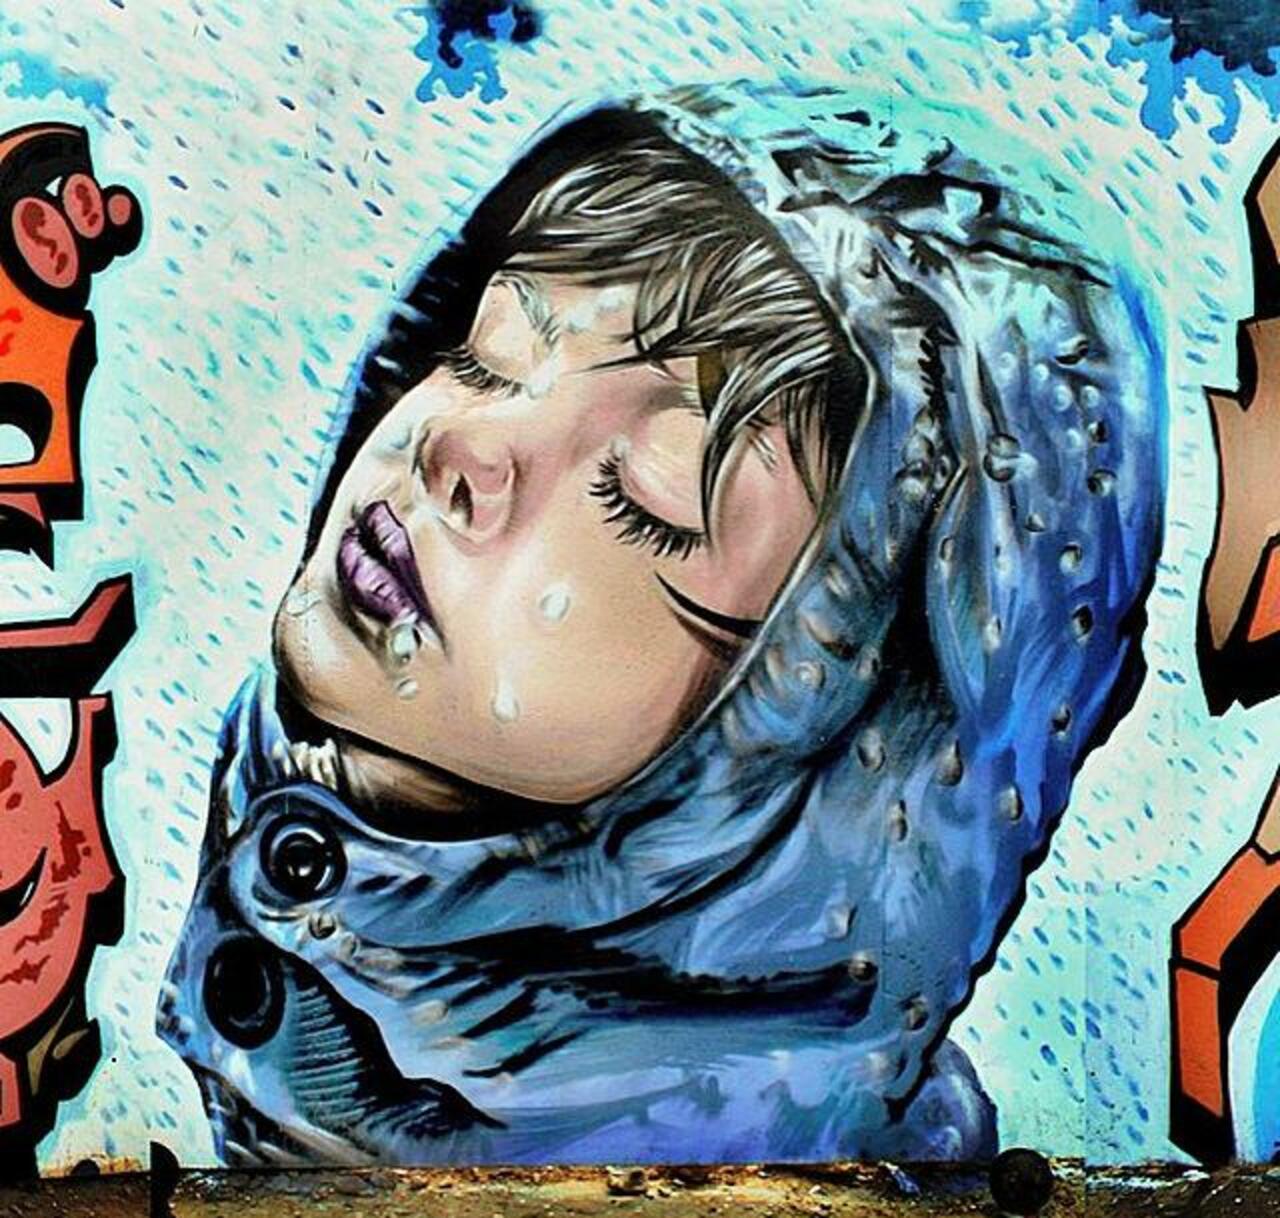 "@Adam_Alyaf98: Street Art by the artist' Spooksoistreet' titled 'Raindrops' 

#art #arte #graffiti #streetart http://t.co/OKBNof3NZs" love